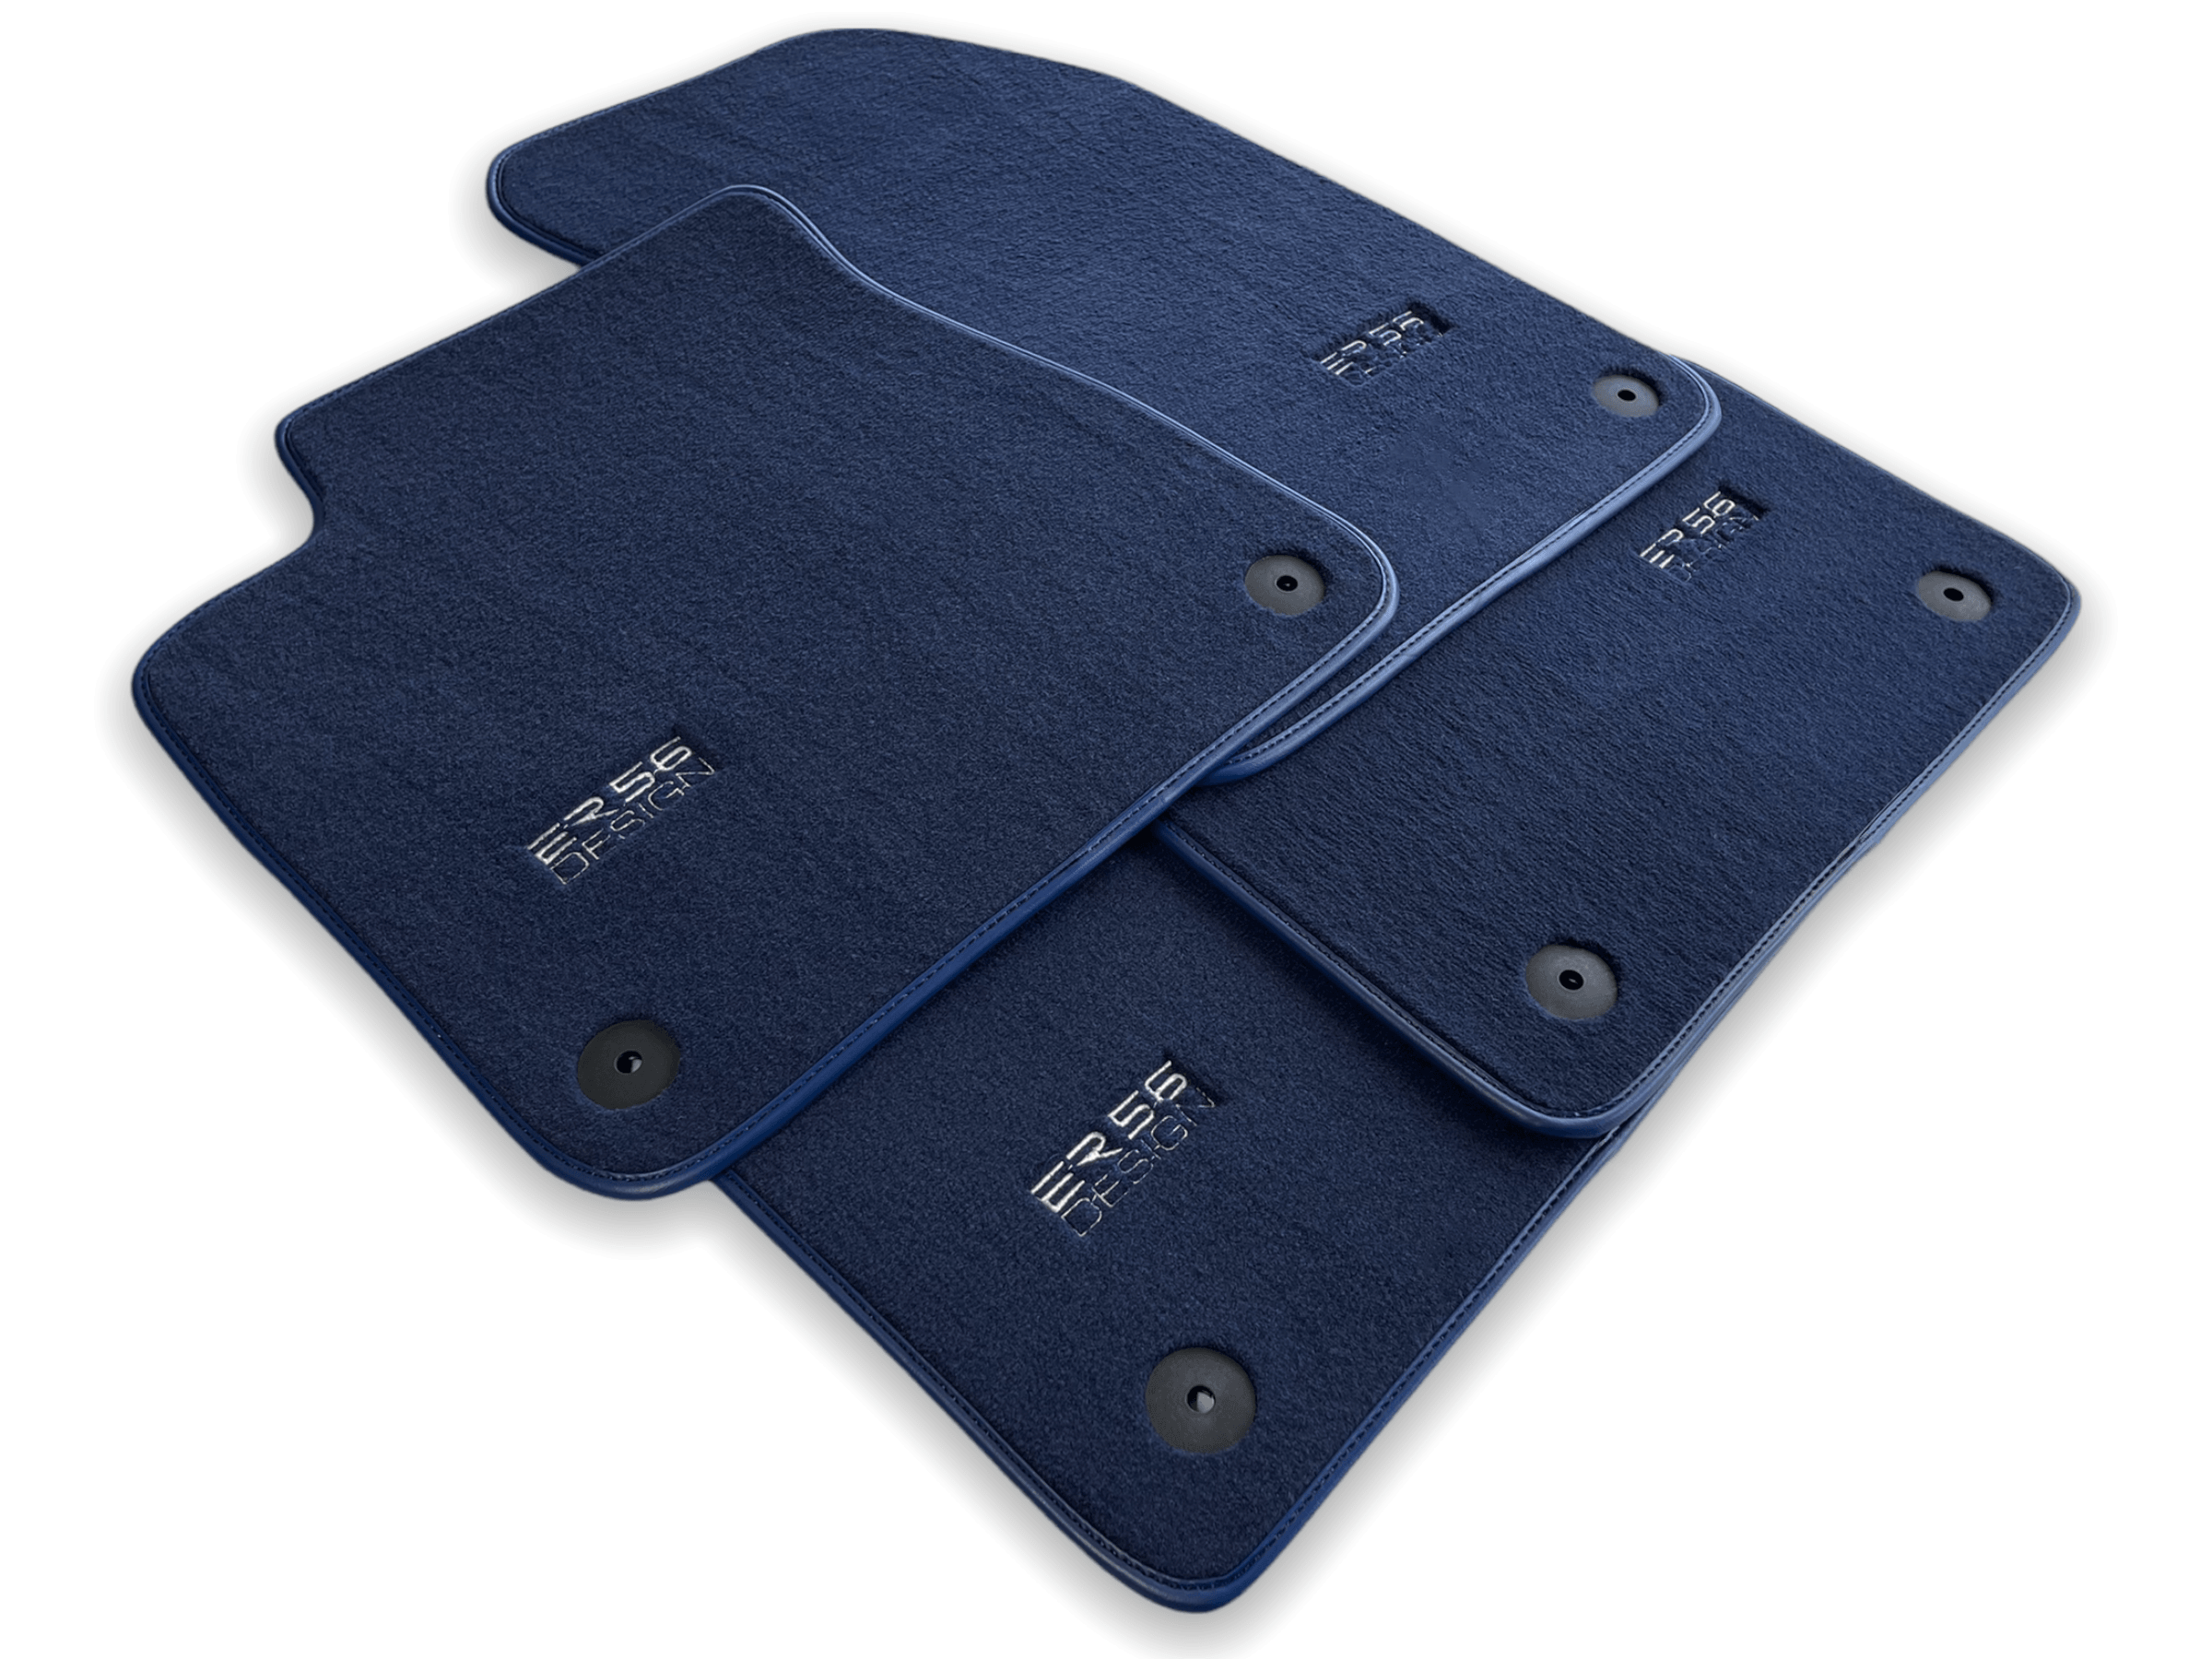 Dark Blue Floor Mats for Audi Q5 8R (2008-2017) | ER56 Design